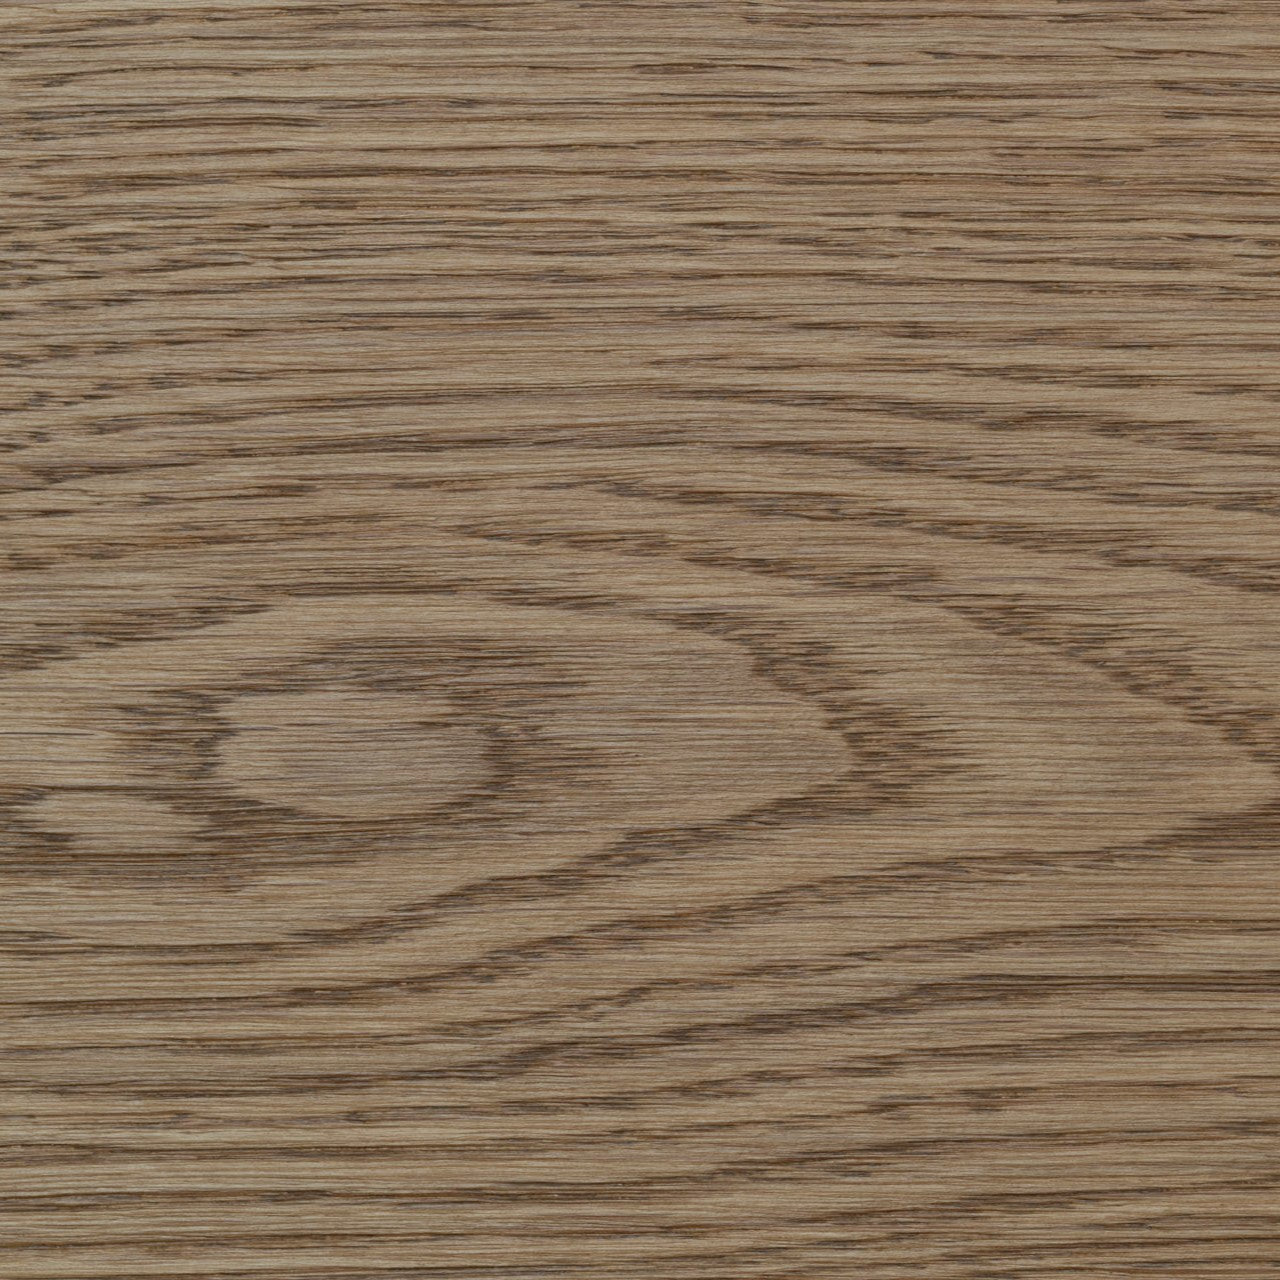 Solid wood plank Alpine Style OAK - light brown